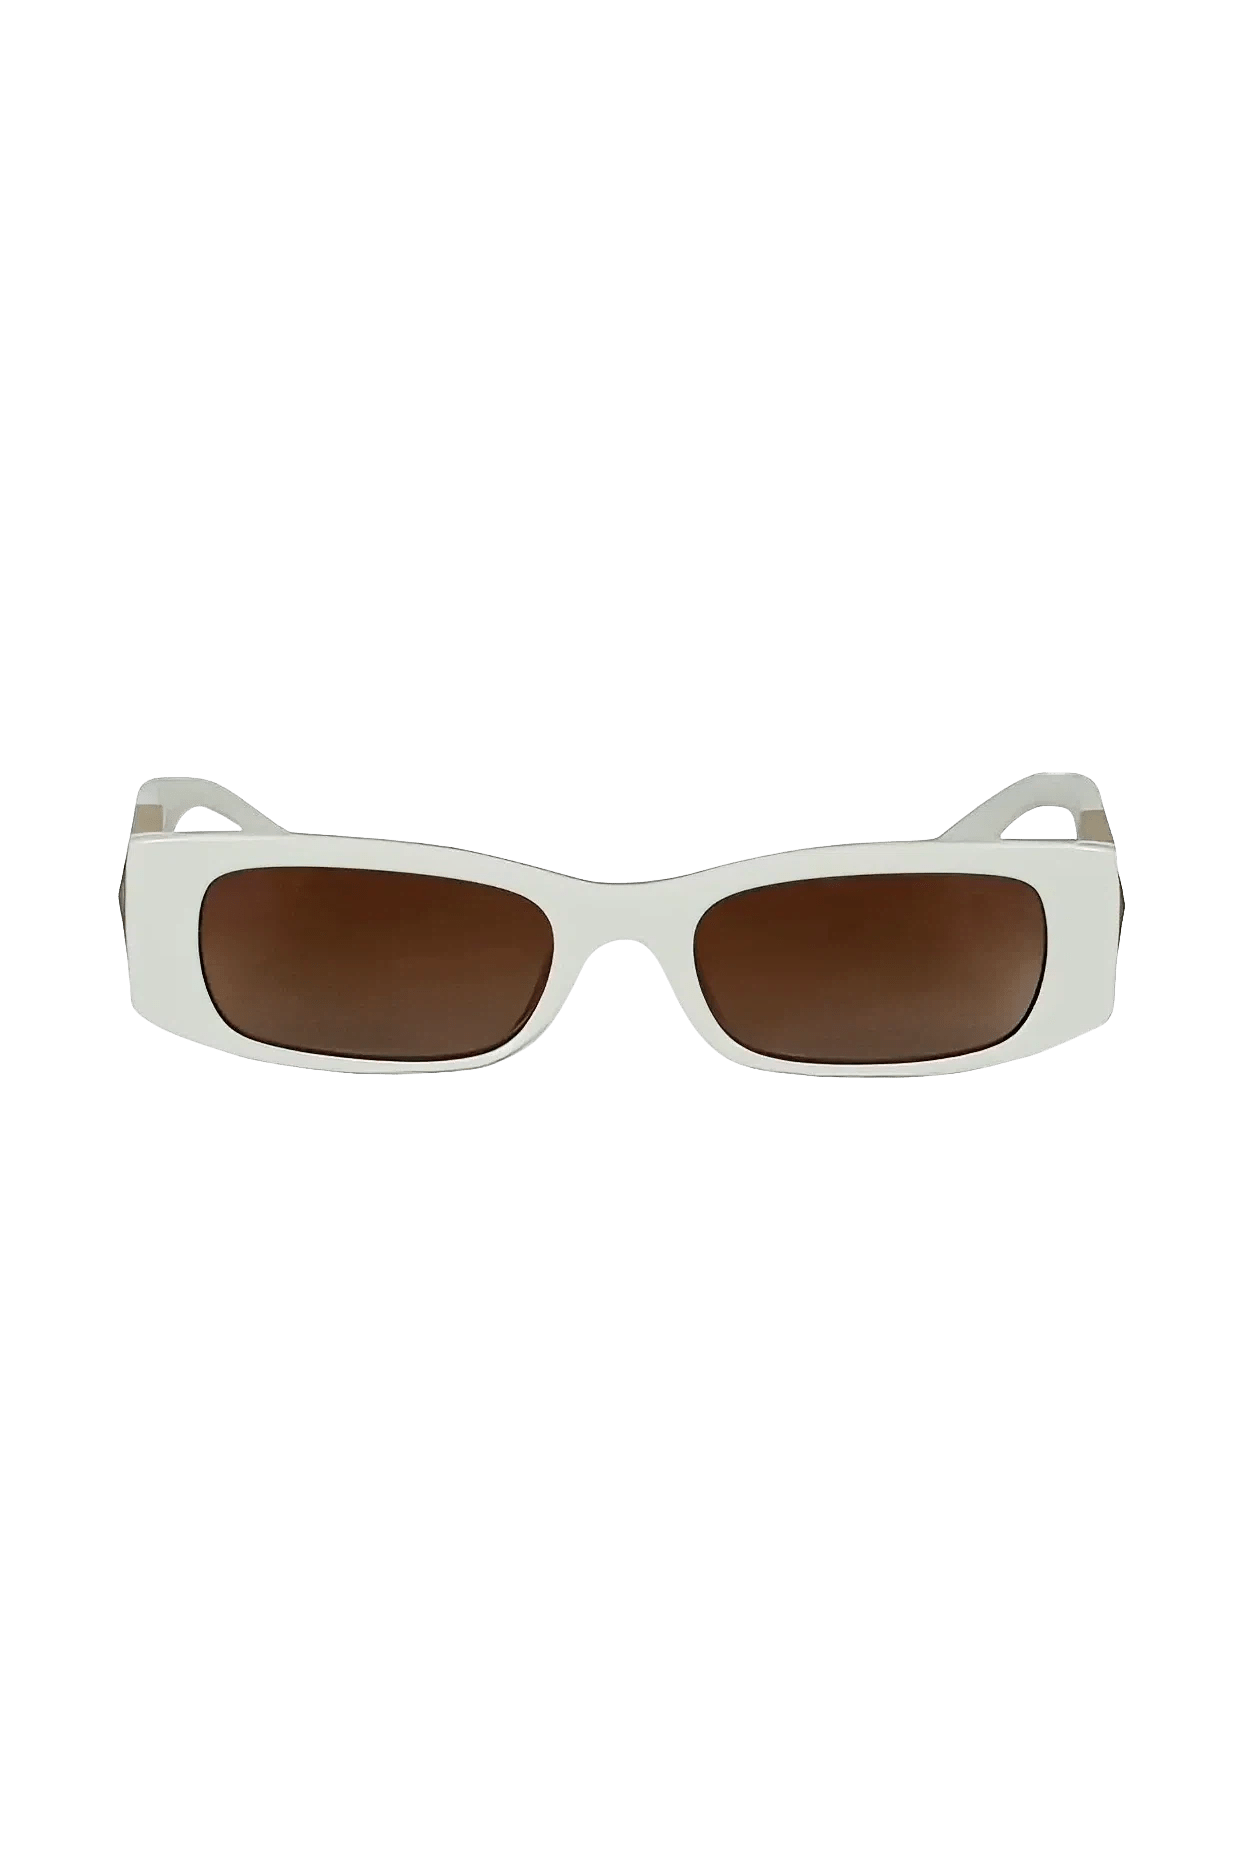 Valentino White Roman Stud Sunglasses - Foxy Couture Carmel